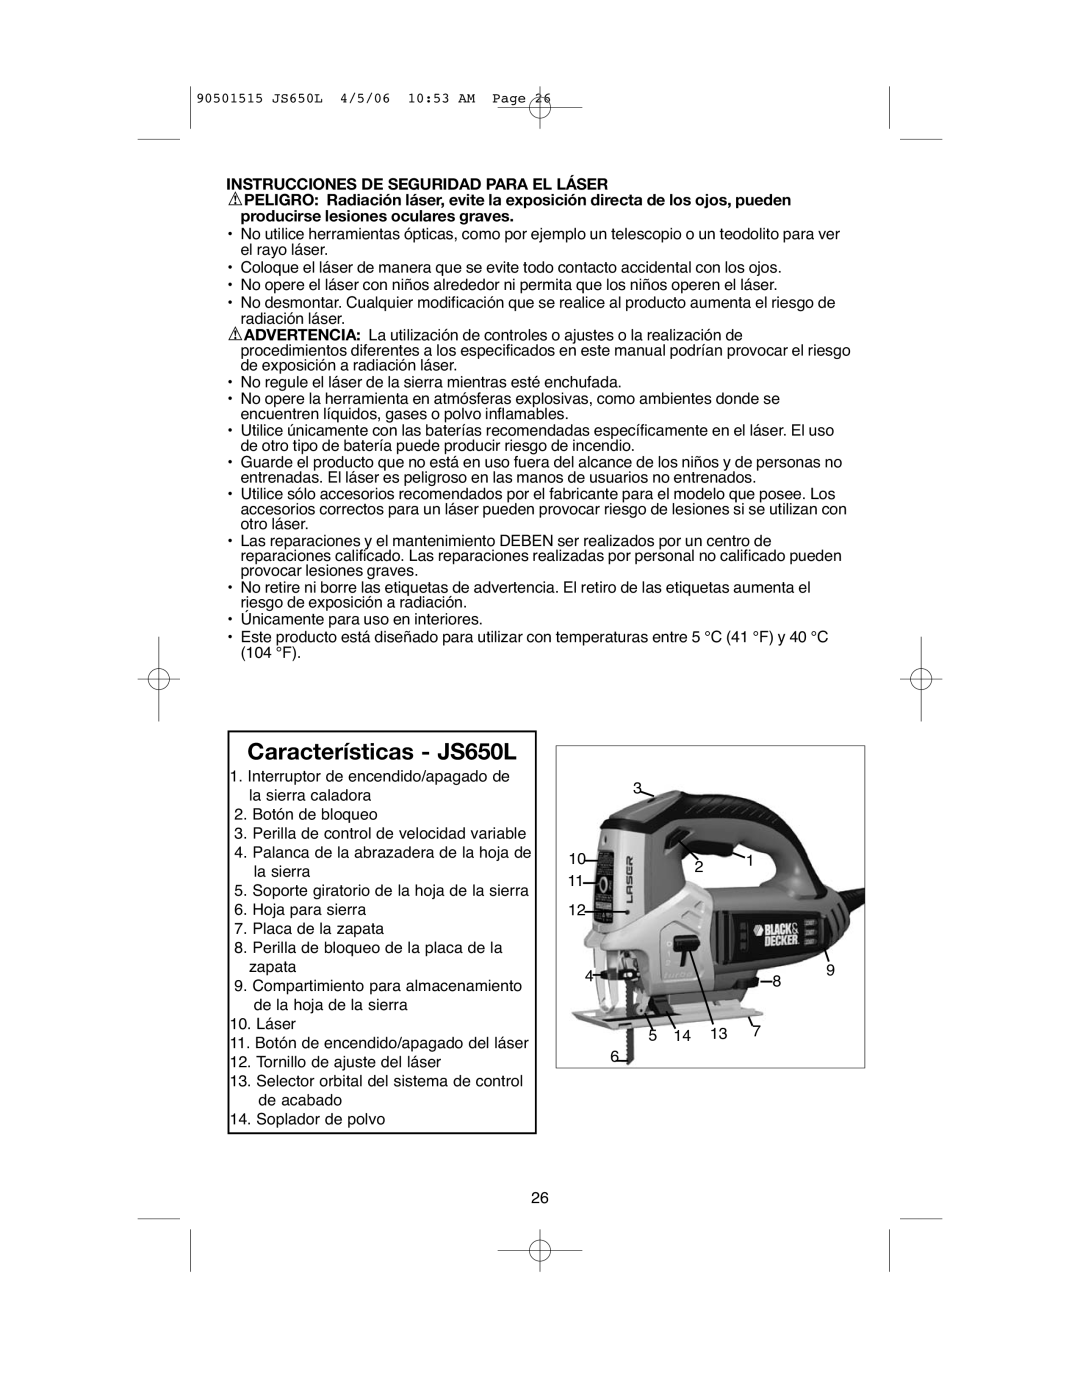 Black & Decker instruction manual Características JS650L, Instrucciones DE Seguridad Para EL Láser 